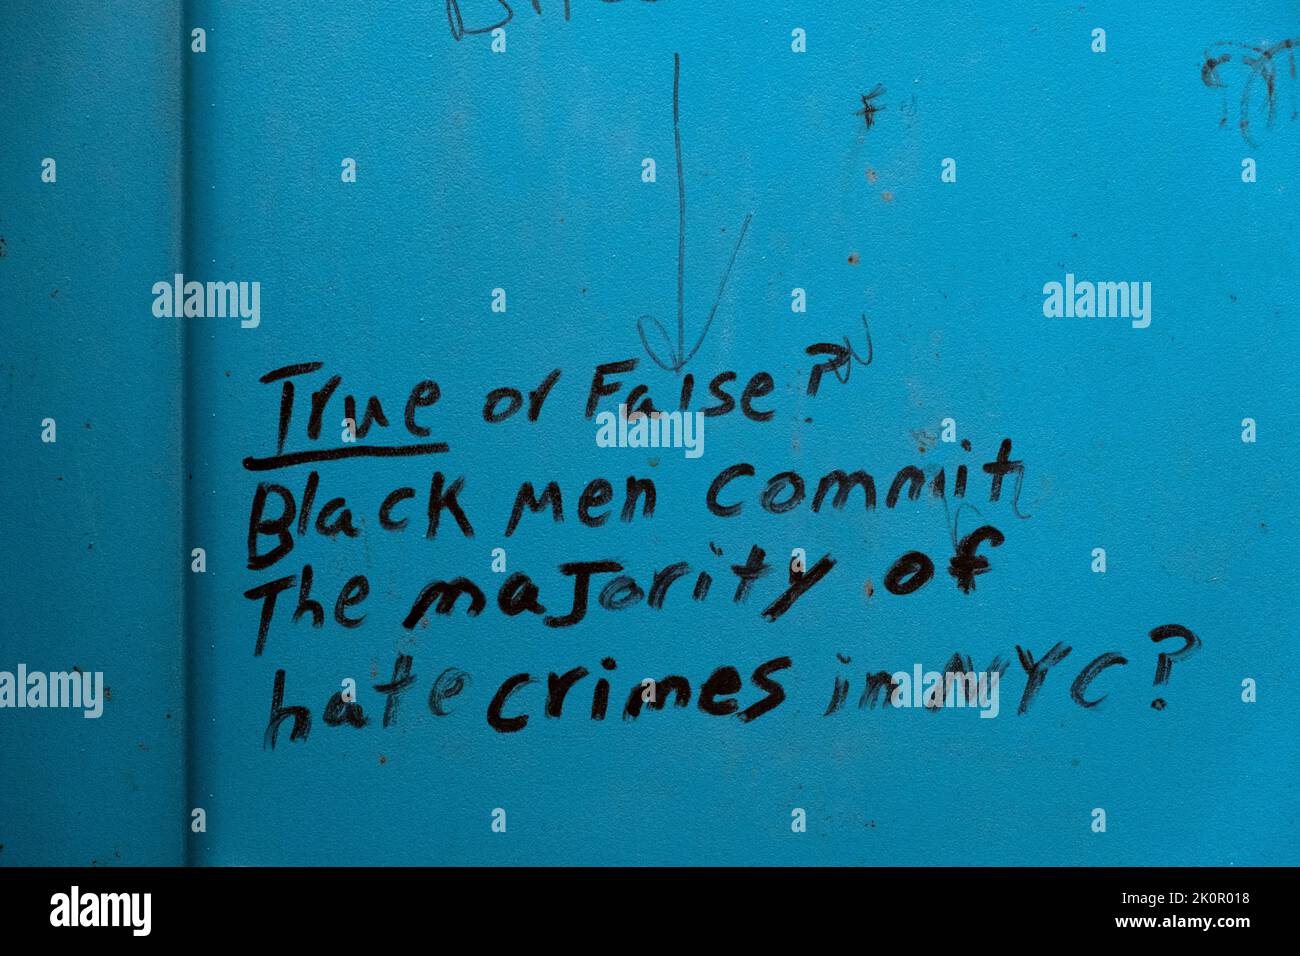 Graffiti racista en el muro de una porta san acusando a hombres negros de cometer la mayoría de crímenes de odio. En el condado de Suffolk, LI, NY. Foto de stock